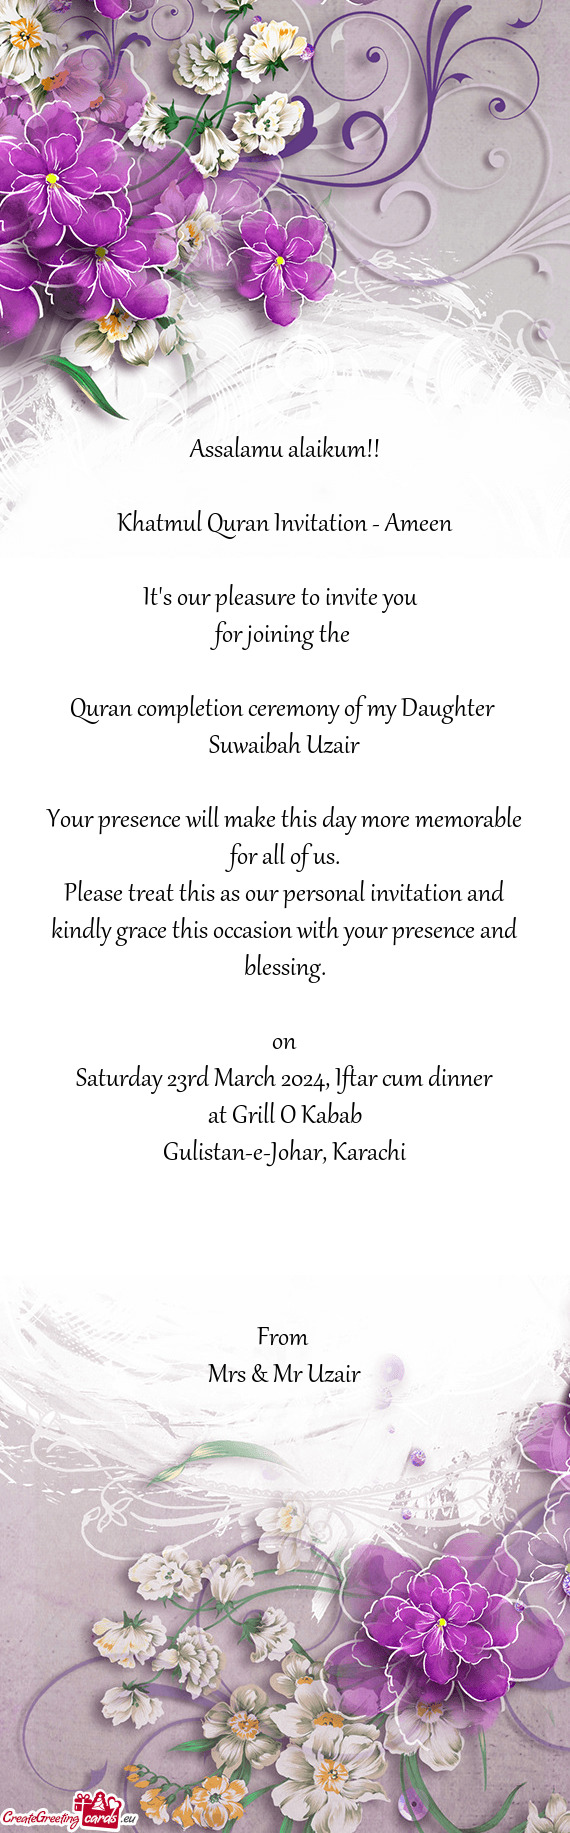 Khatmul Quran Invitation - Ameen